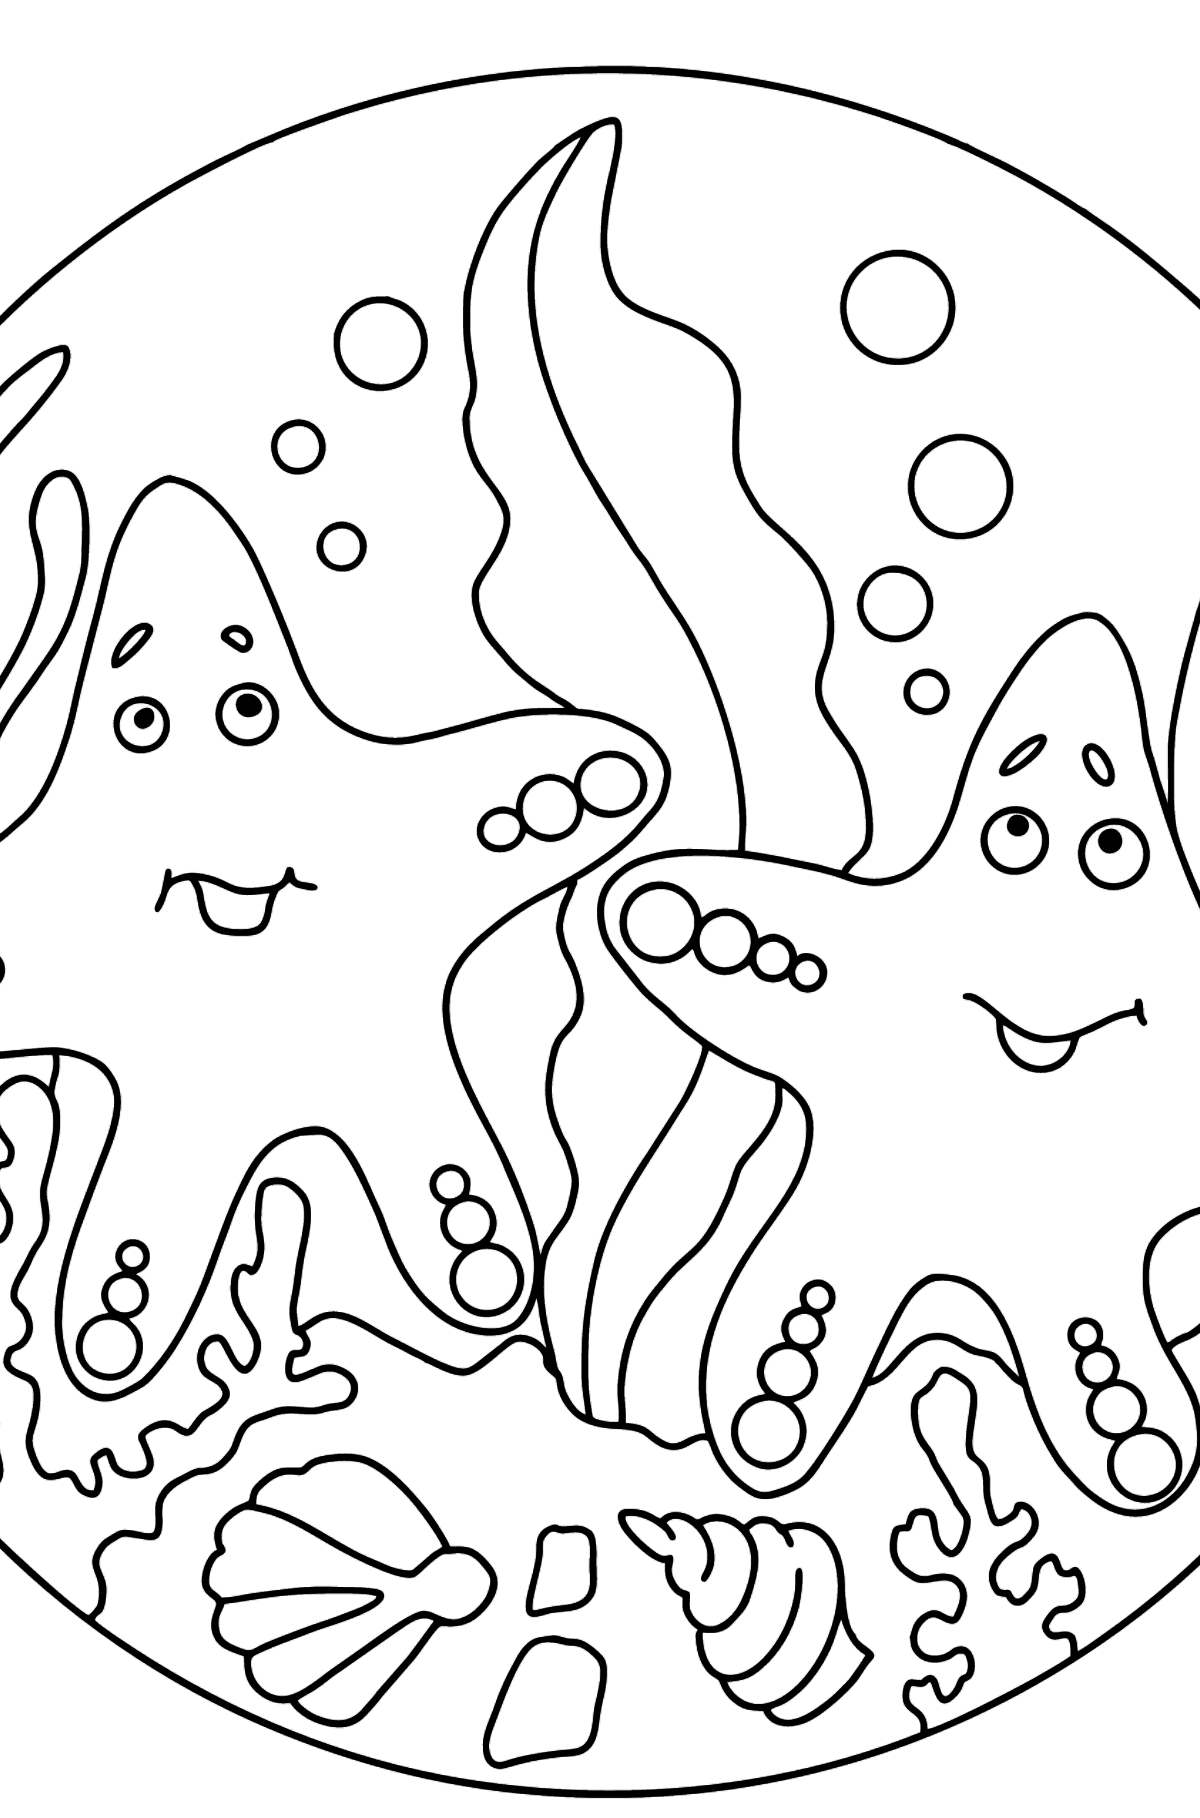 Раскраска Две морские звезды - Картинки для Детей